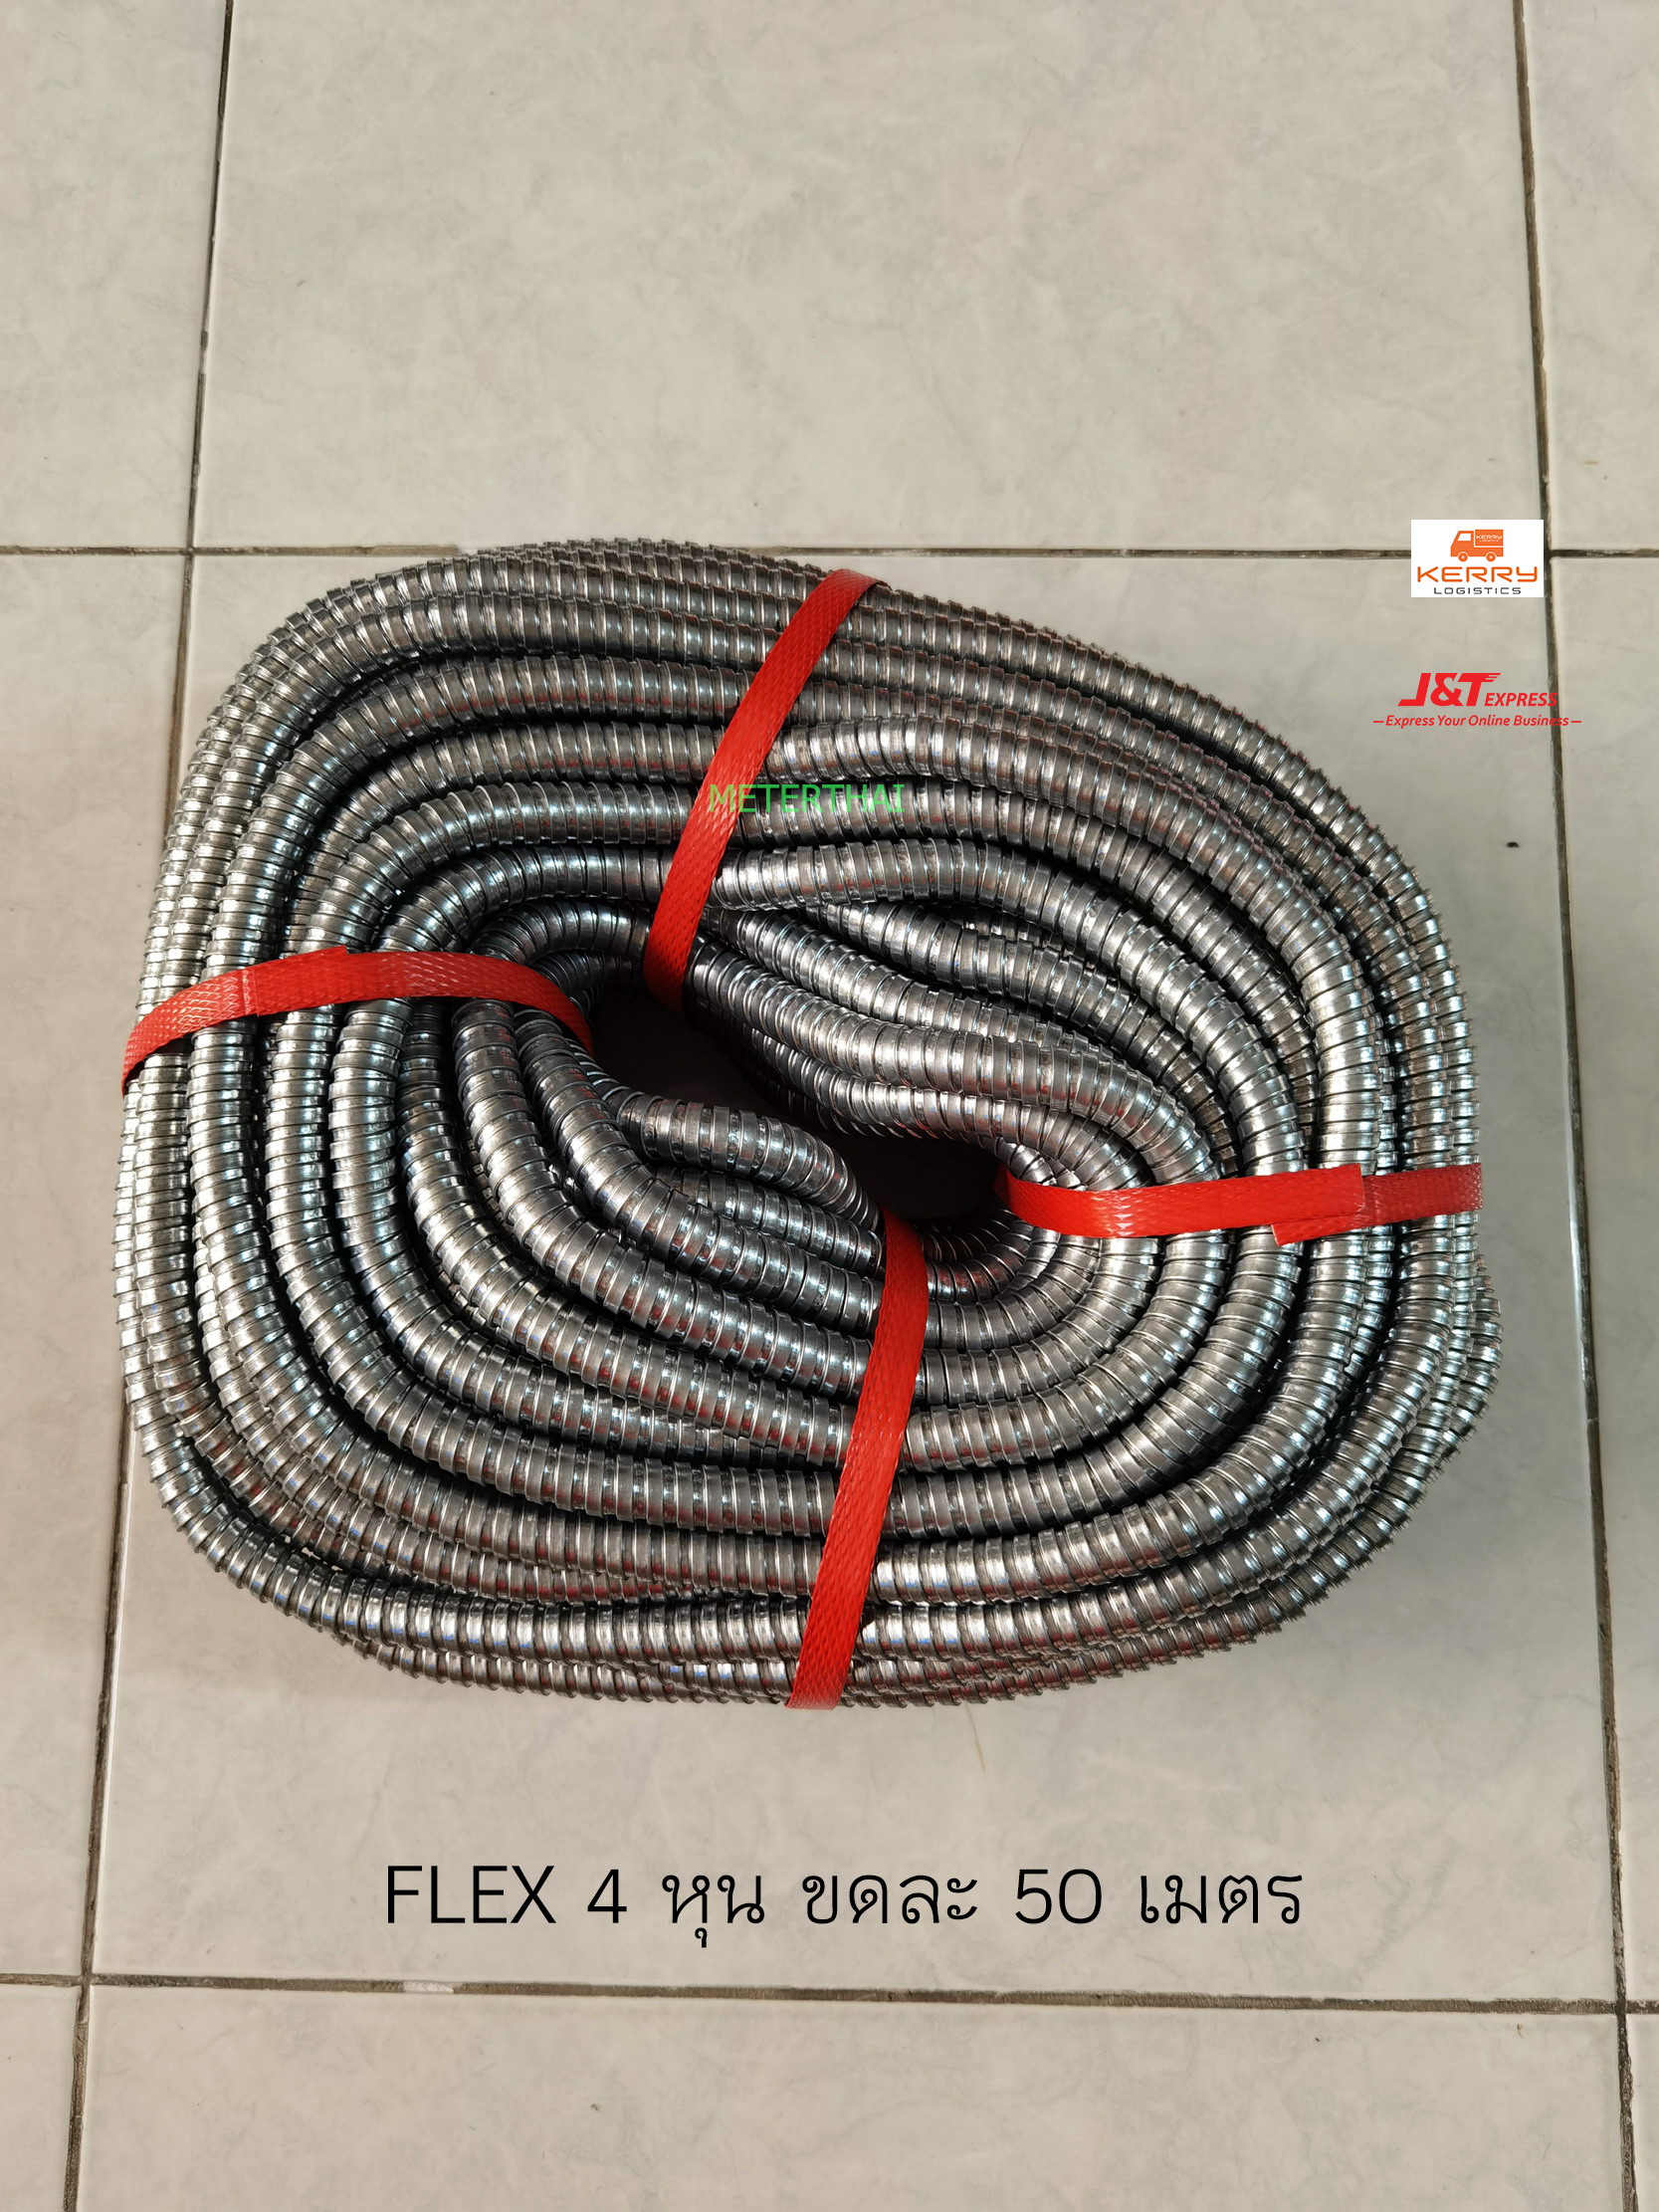 FLEX ท่อเฟล็กซ์เหล็ก ขนาด 4หุน (1/2 นิ้ว) ยาว 50 เมตร